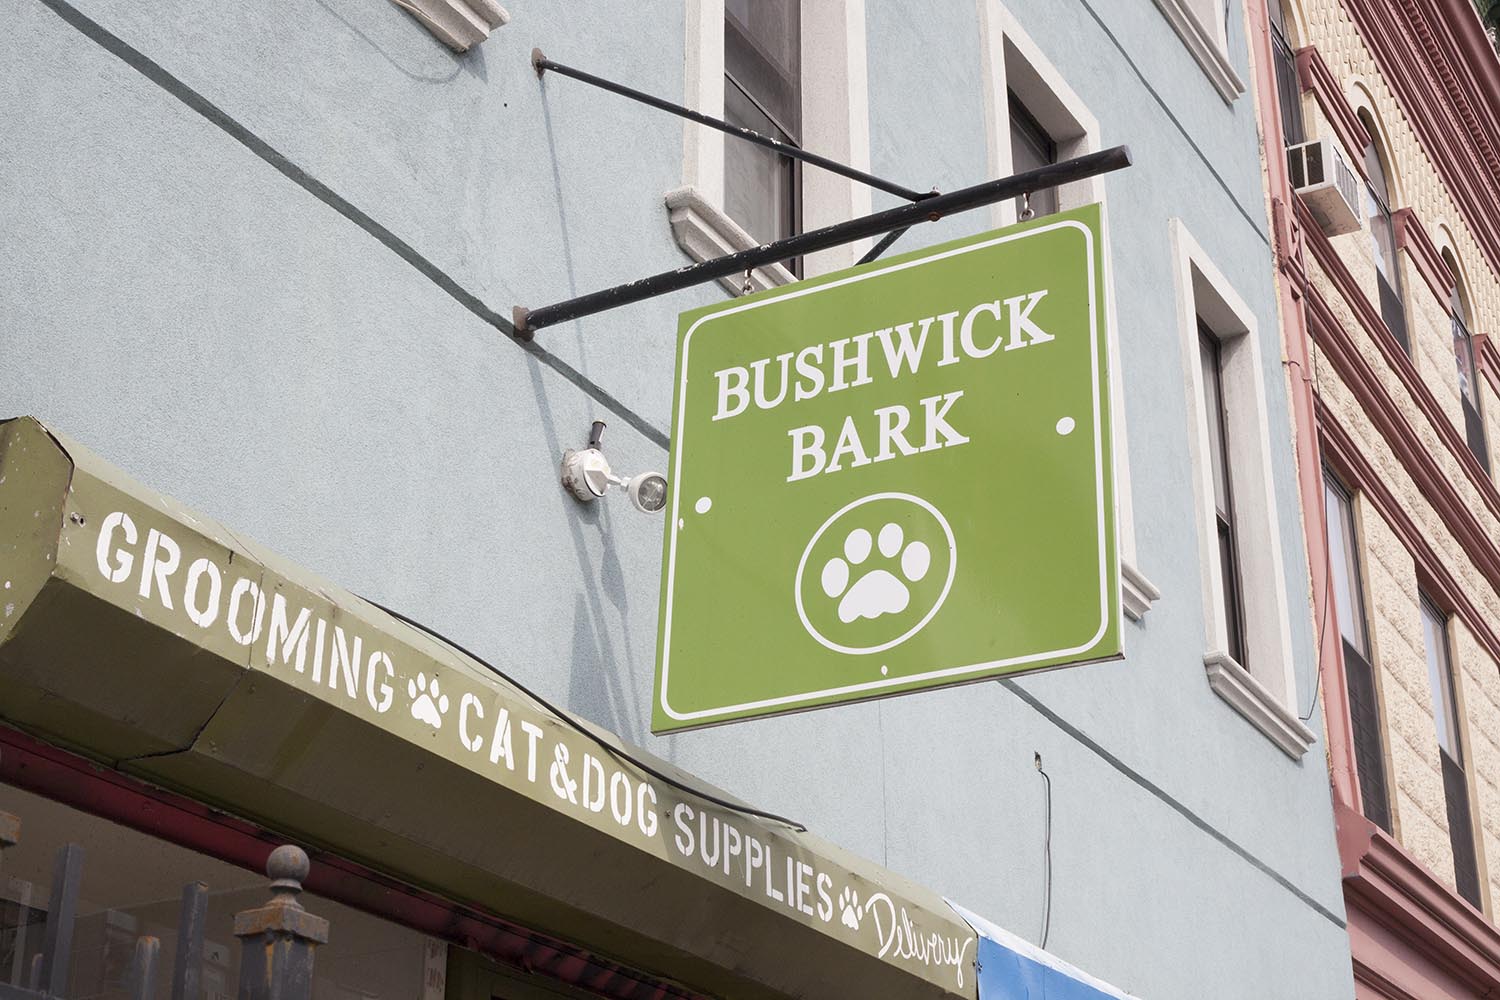 Bushwick Bark on Knickerbocker